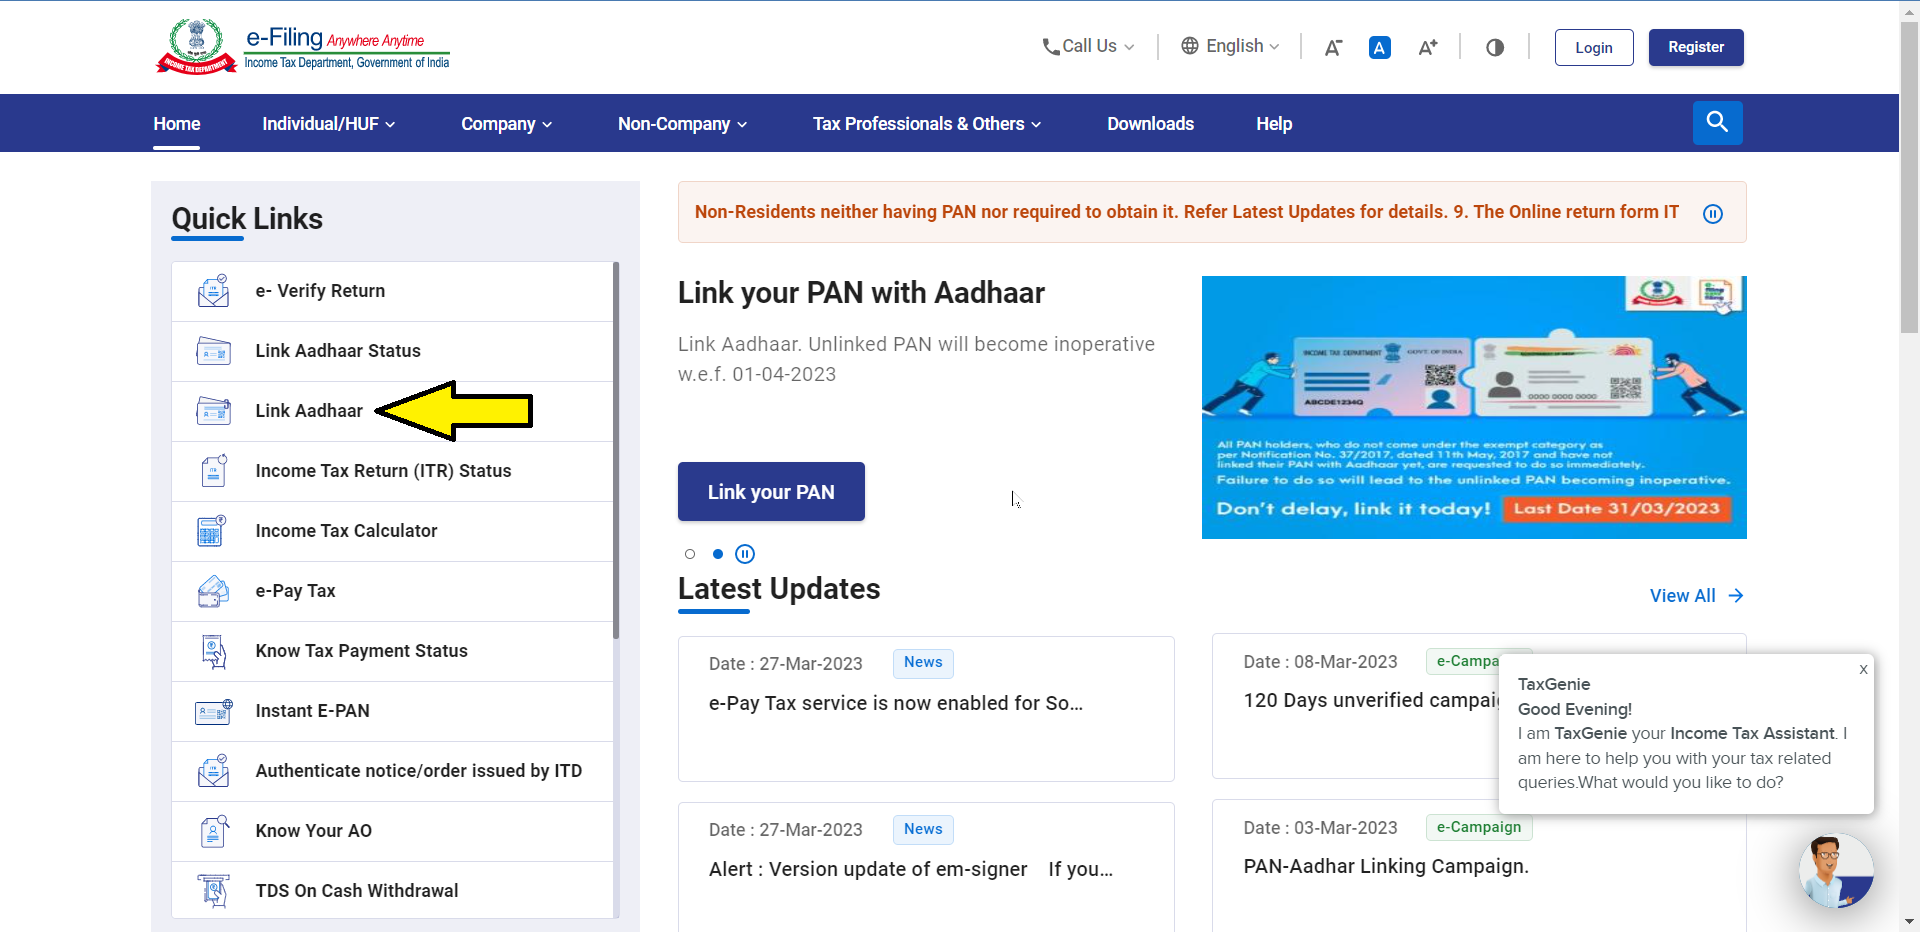 How to link PAN with Aadhaar